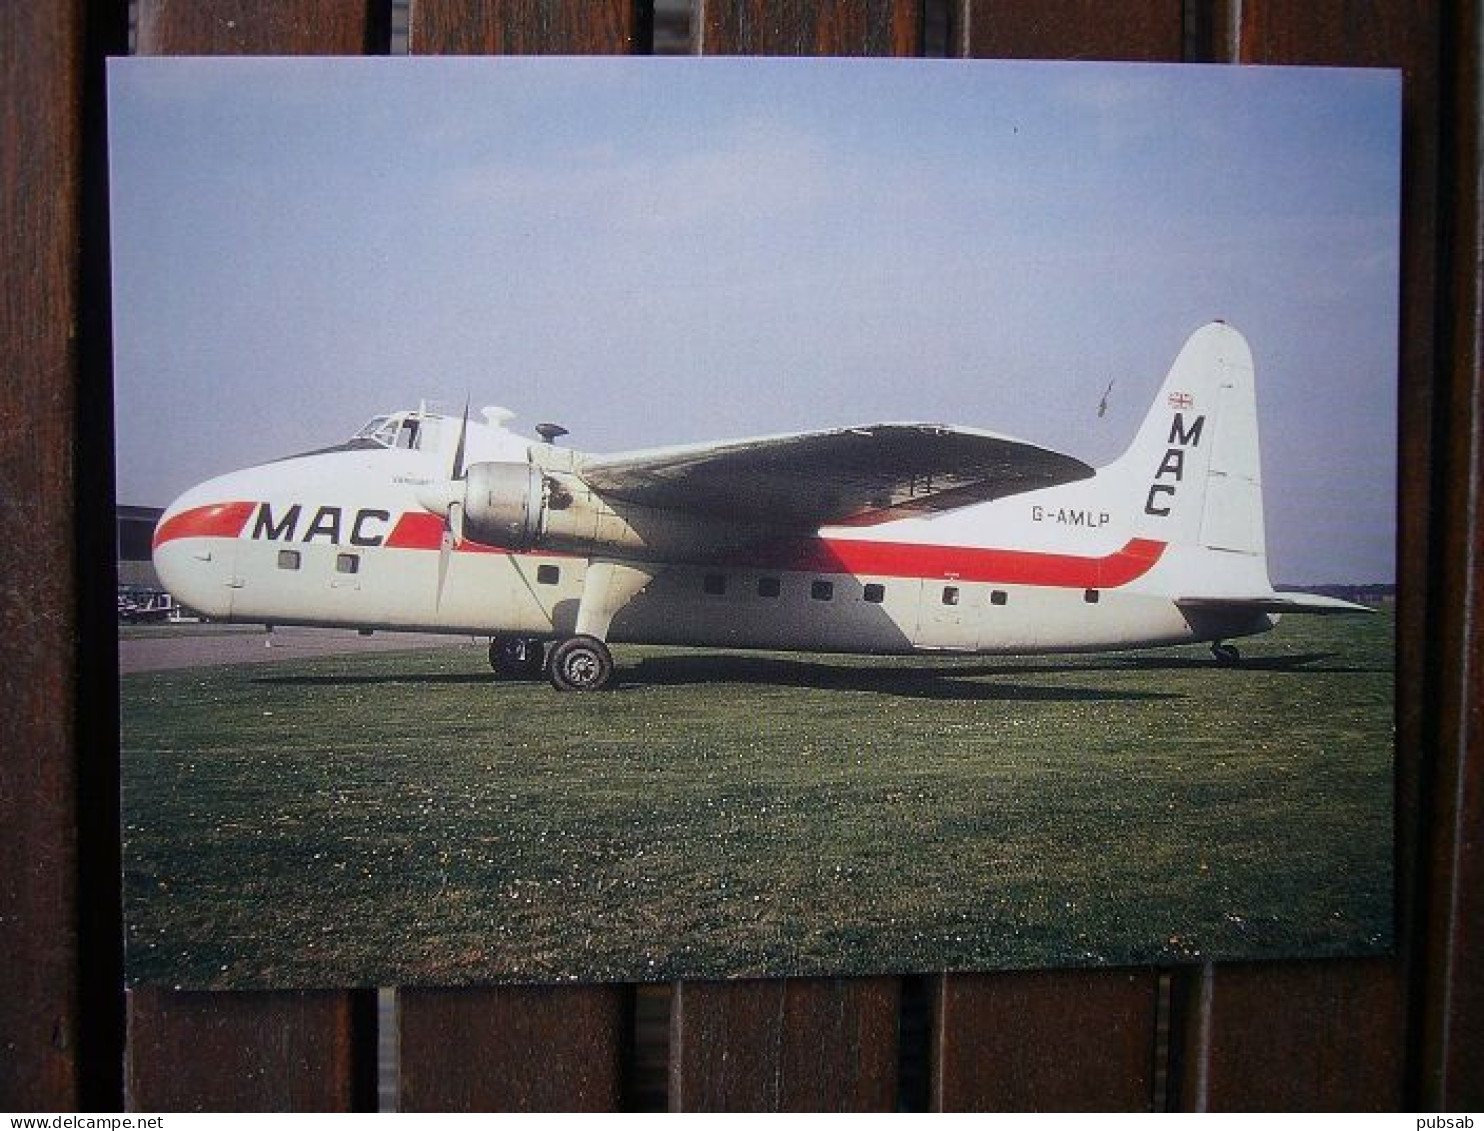 Avion / Airplane / MAC - MIDLAND AIR CARGO/ Bristol 170 Mk 31 Freighter / Registered As G-AMLP - 1946-....: Modern Era